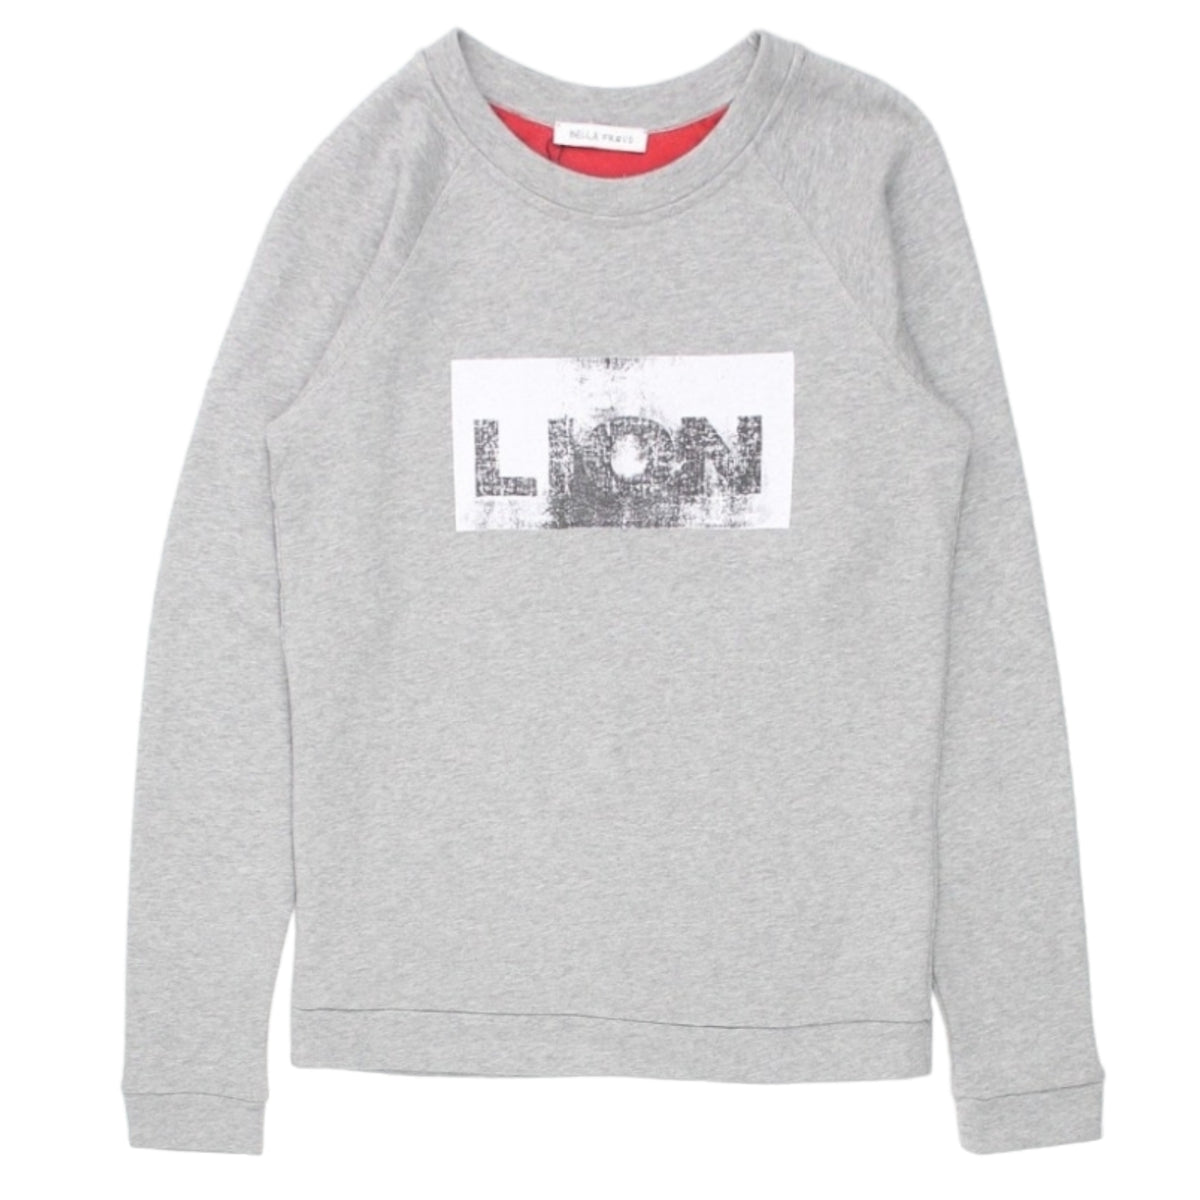 Bella Freud Grey Lion Sweatshirt